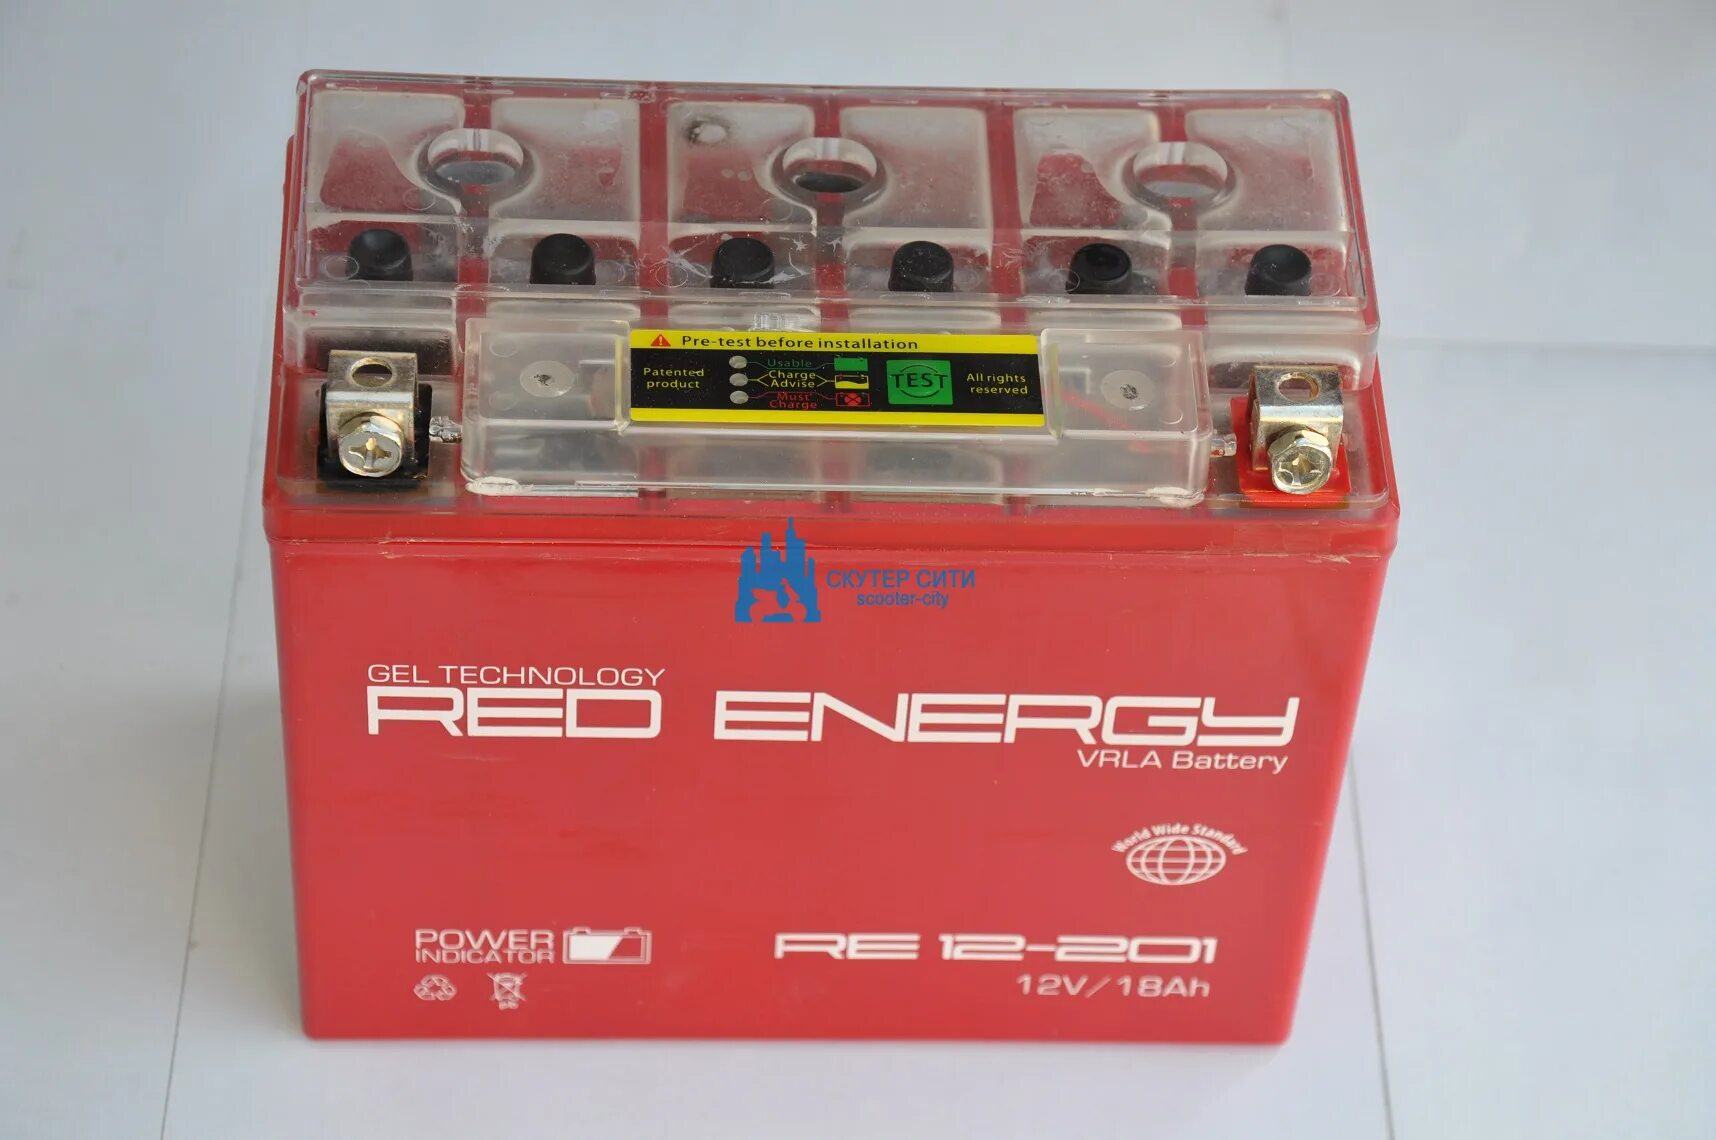 Аккумулятор energy 12v. Аккумулятор Red Energy 12v 20ah. Аккумулятор Red Energy 12v 6ah. Аккумулятор Red Energy 12v 5ah. Red Energy аккумулятор 12v 9ah.